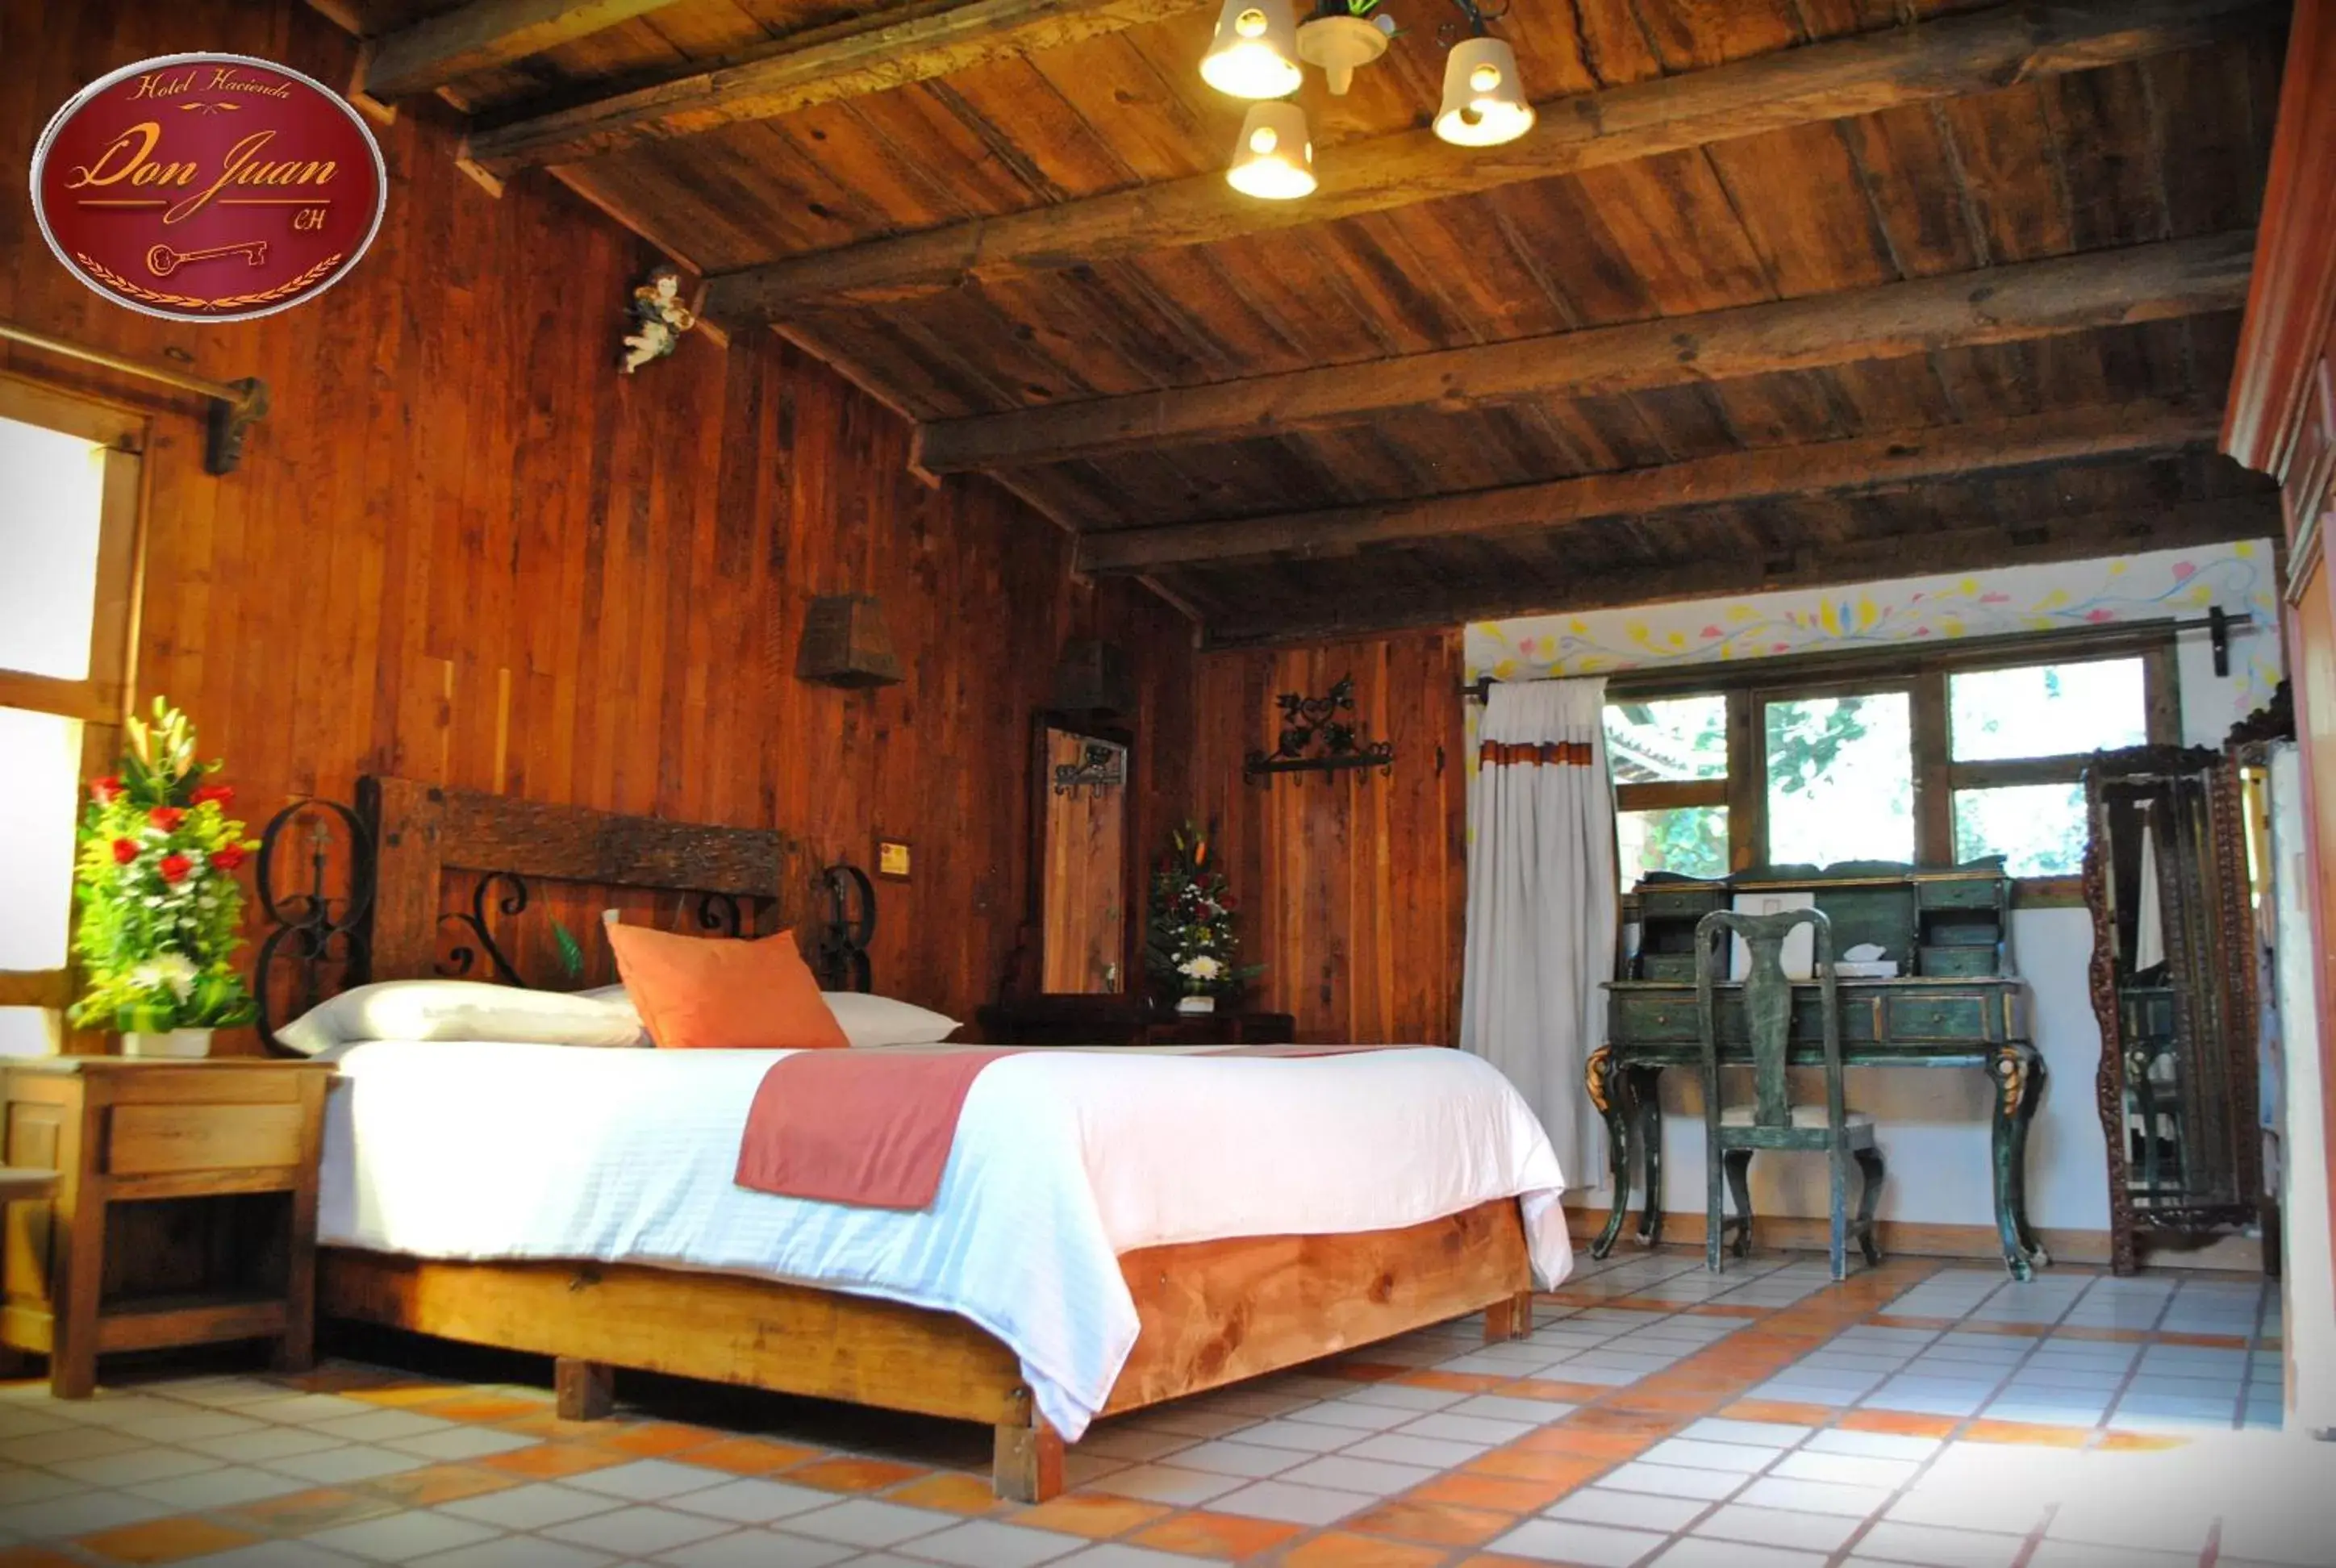 Bed in Hotel Hacienda Don Juan San Cristobal de las Casas Chiapas